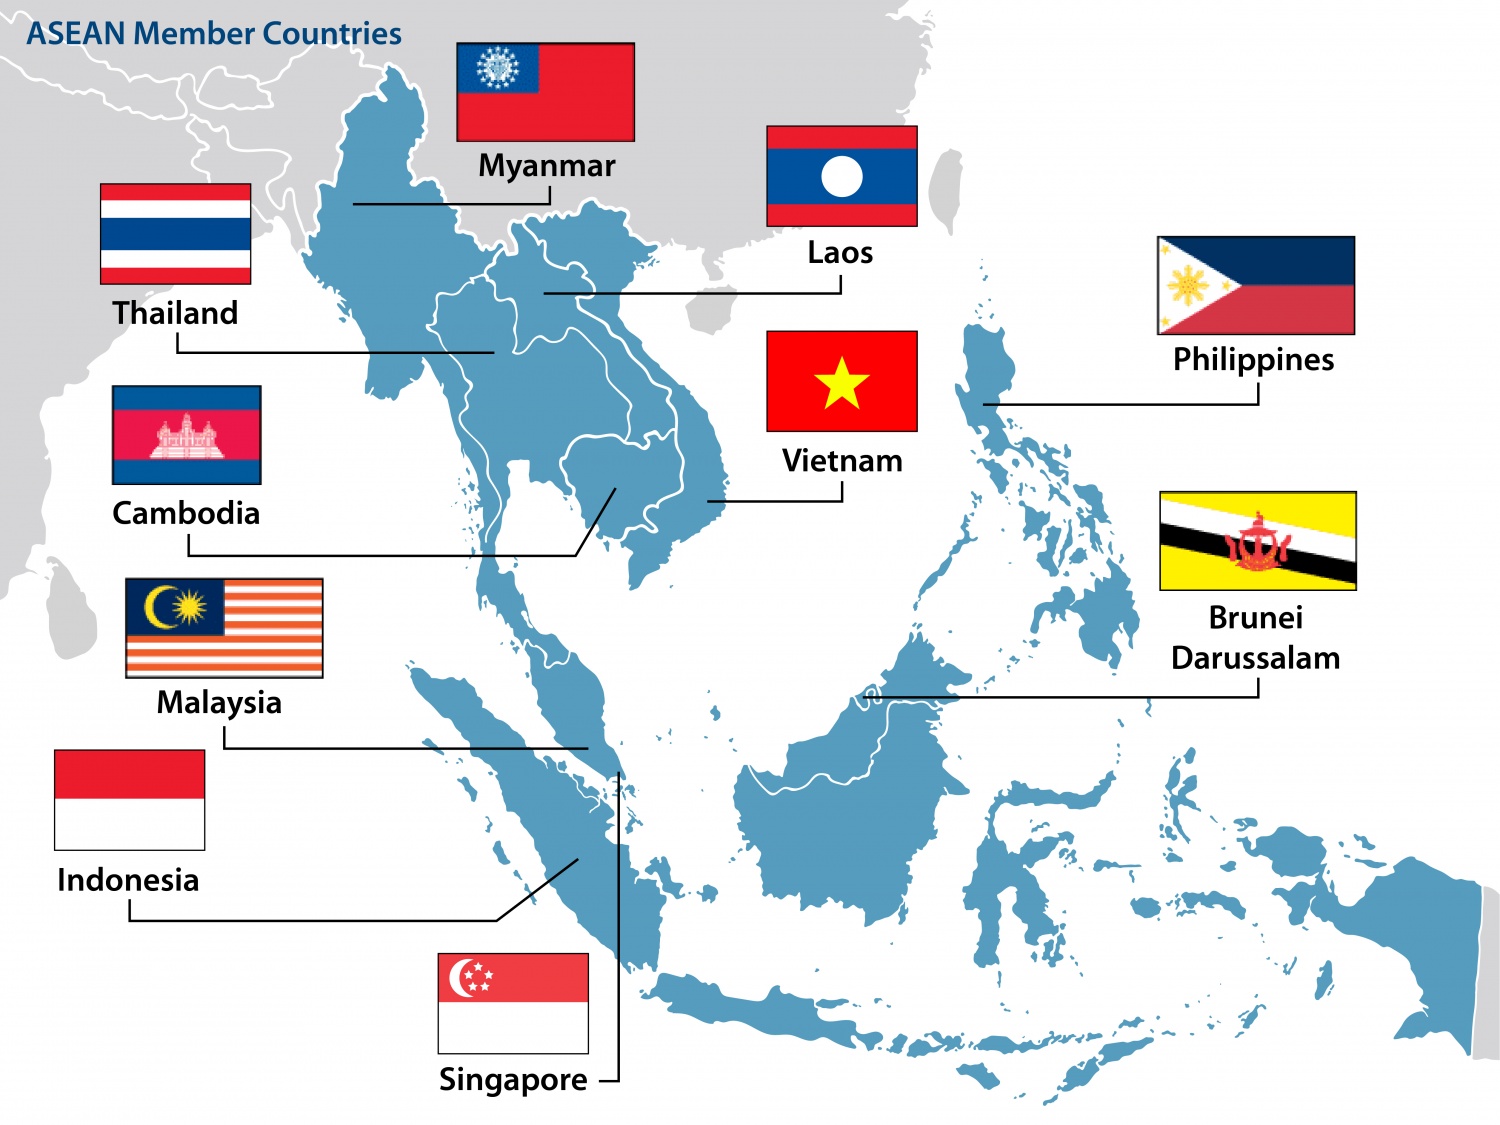 Trung Quốc và Úc có thể hợp tác để thúc đẩy quá trình chuyển đổi năng lượng ở ASEAN